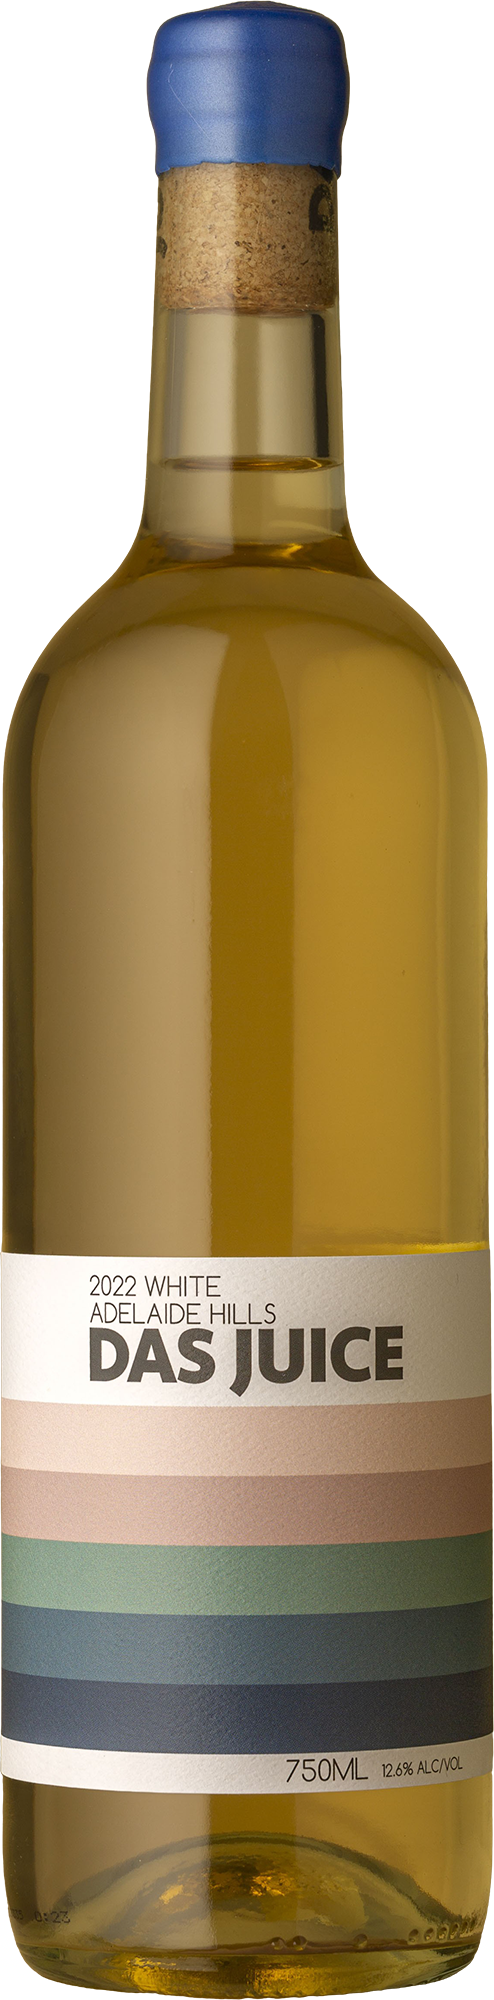 Das Juice - White Blend 2022 White Wine